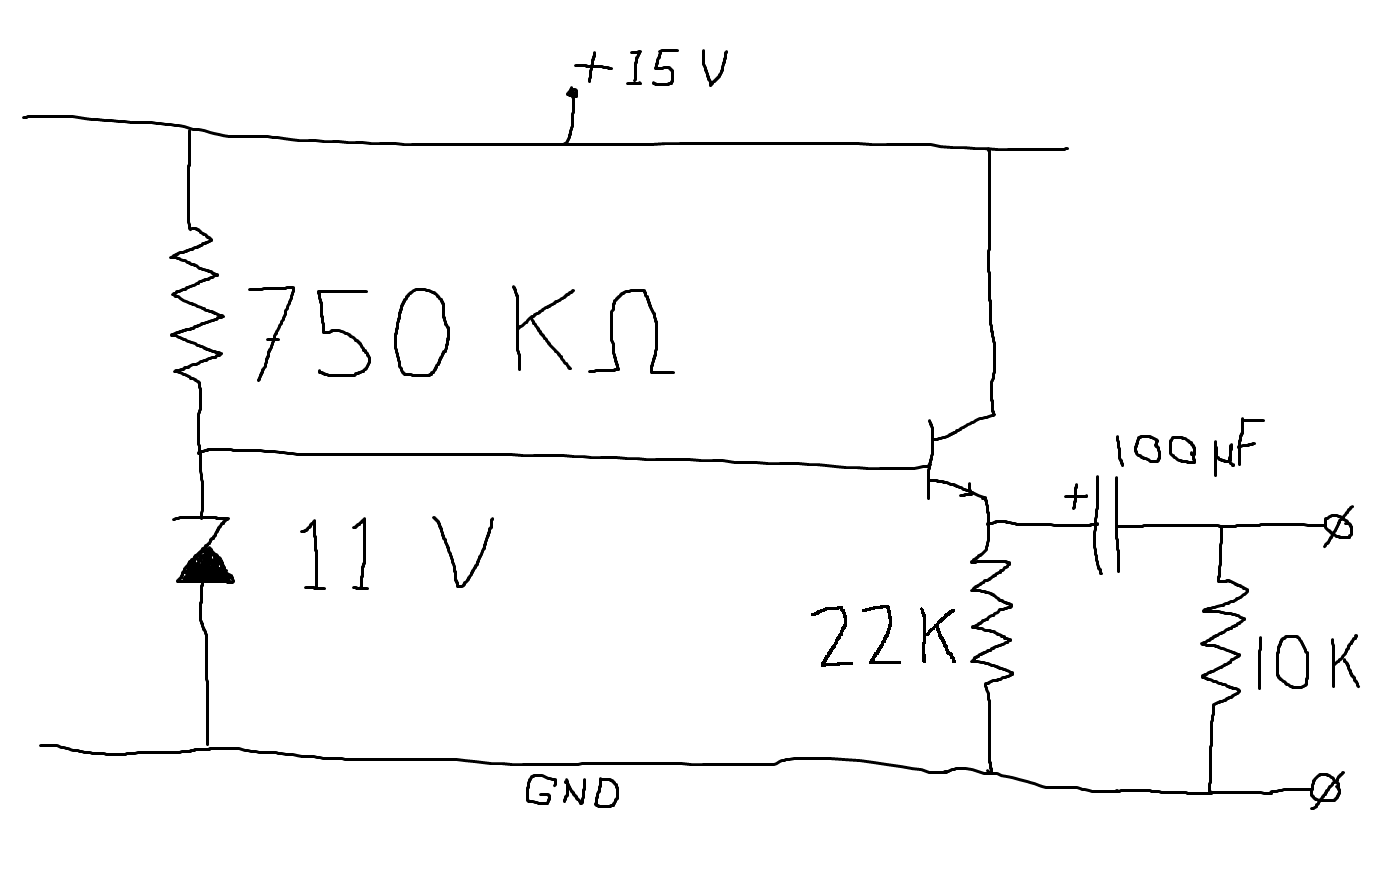 circuit2.png - 58kB